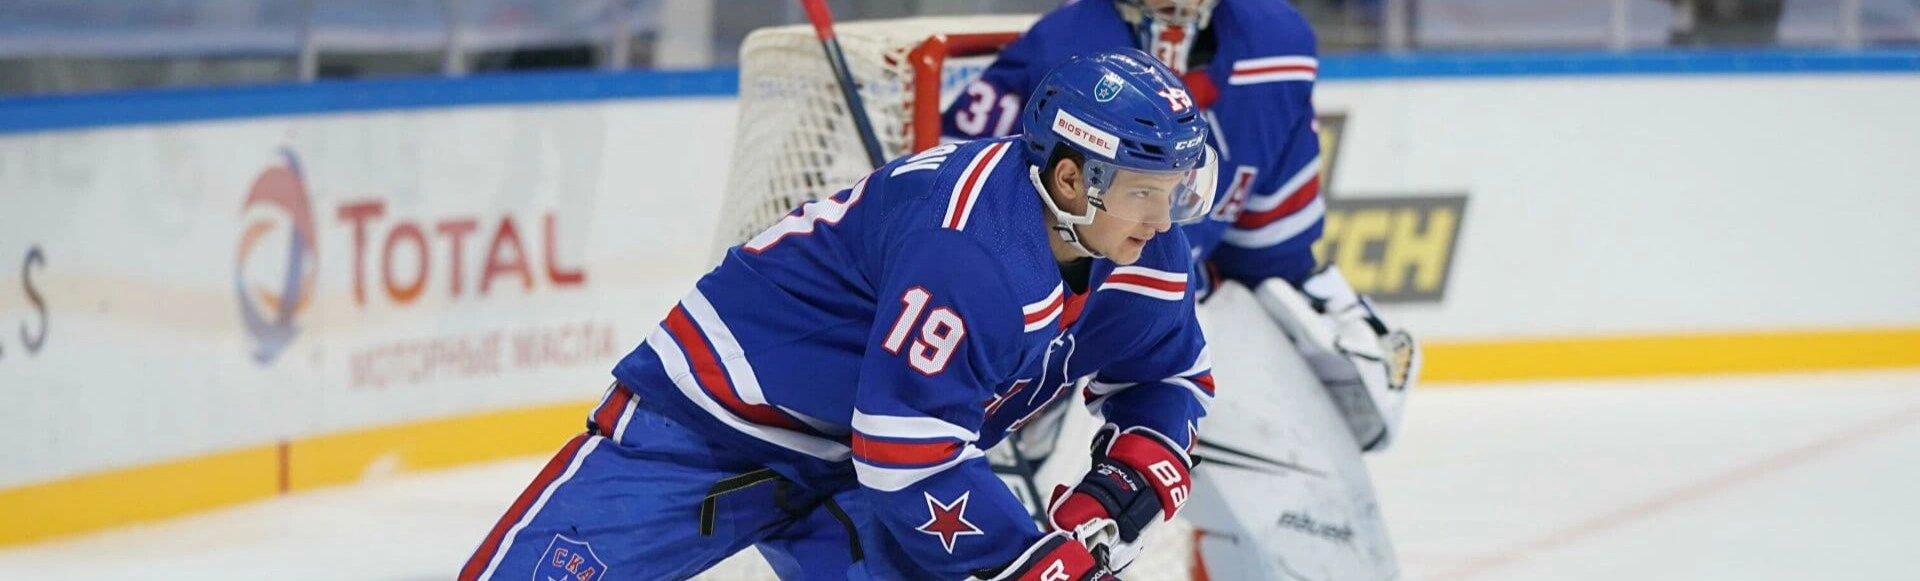 Ткачев может покинуть СКА и продолжить карьеру в НХЛ
